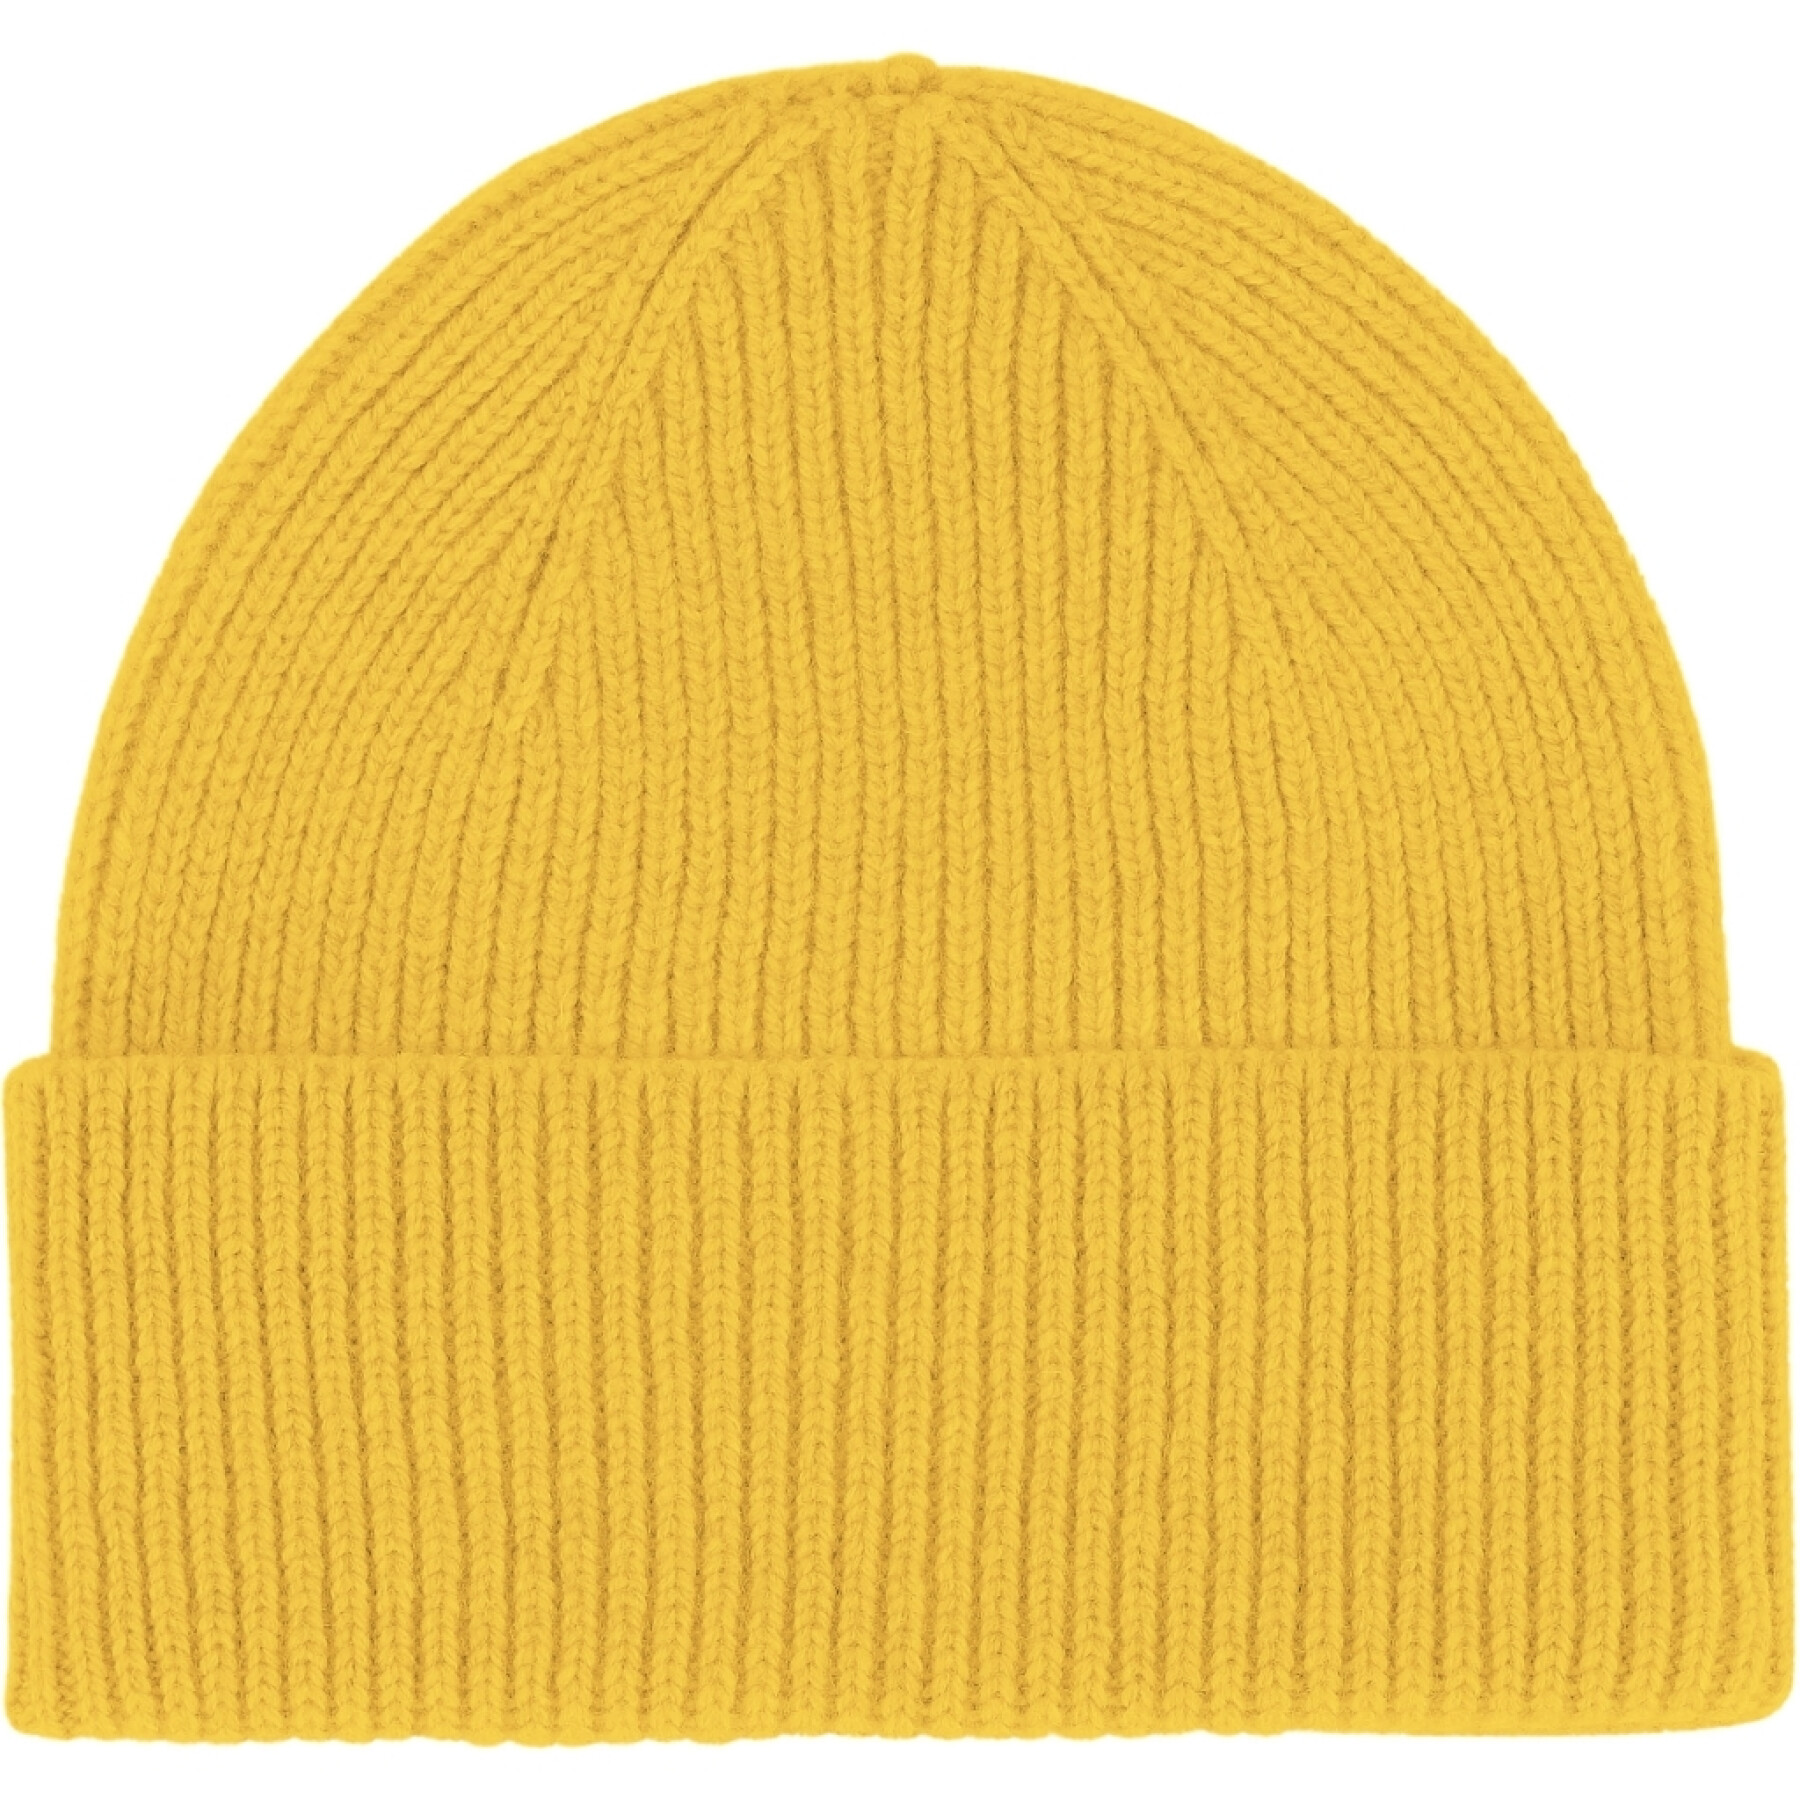 Single-fold bonnet Colorful Standard Lemon Yellow